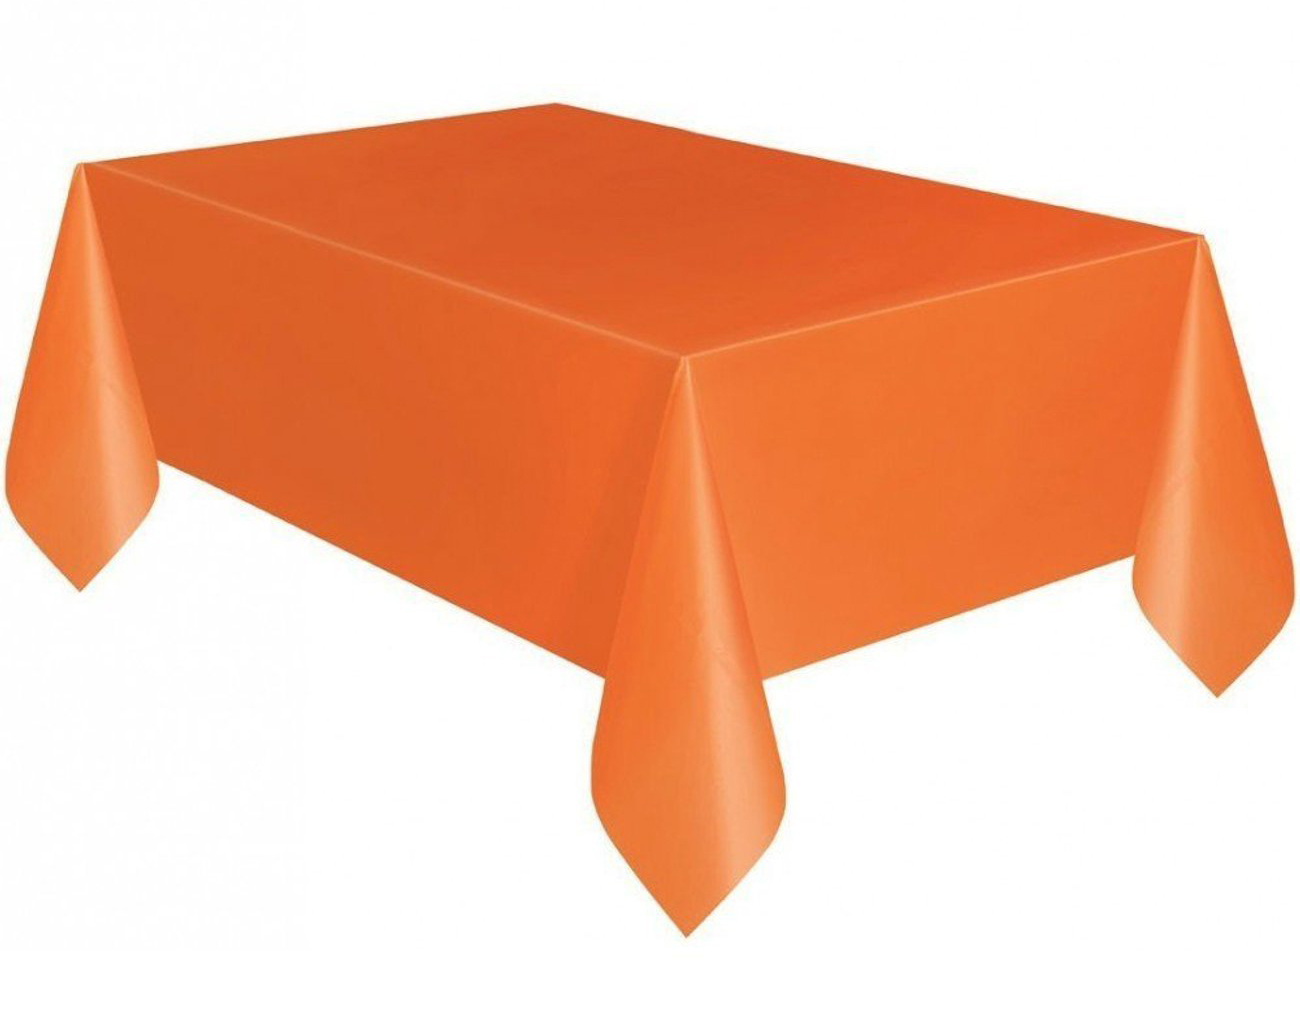 Turuncu Renk Plastik Masa Örtüsü 120x180 cm (CLZ)